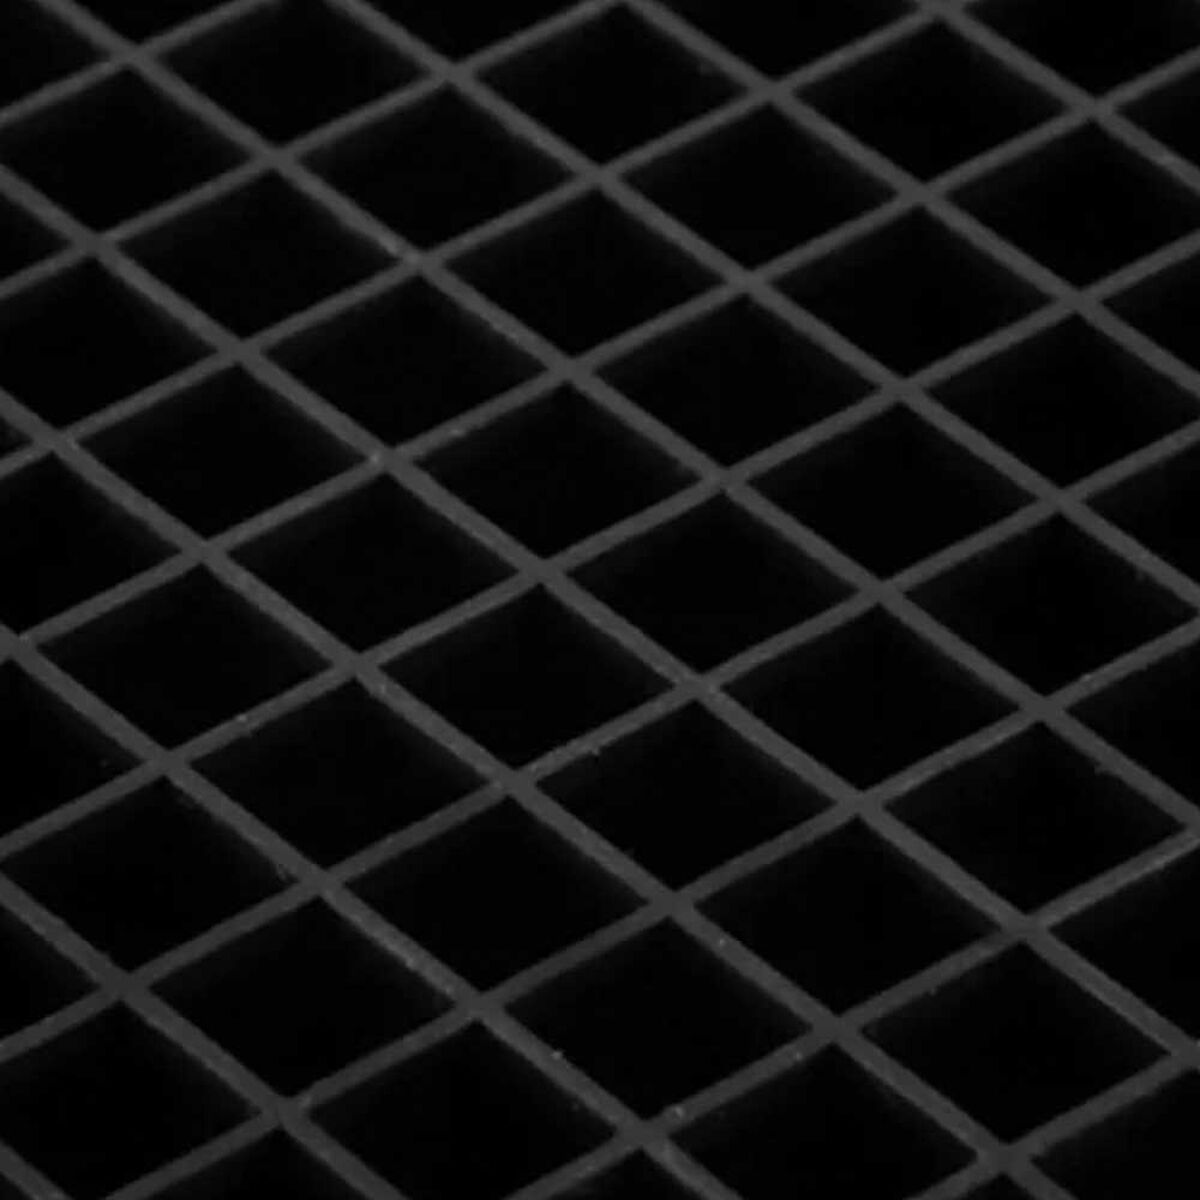 Cubeta de Hielo Simplit 160 Mini Hielos Negro